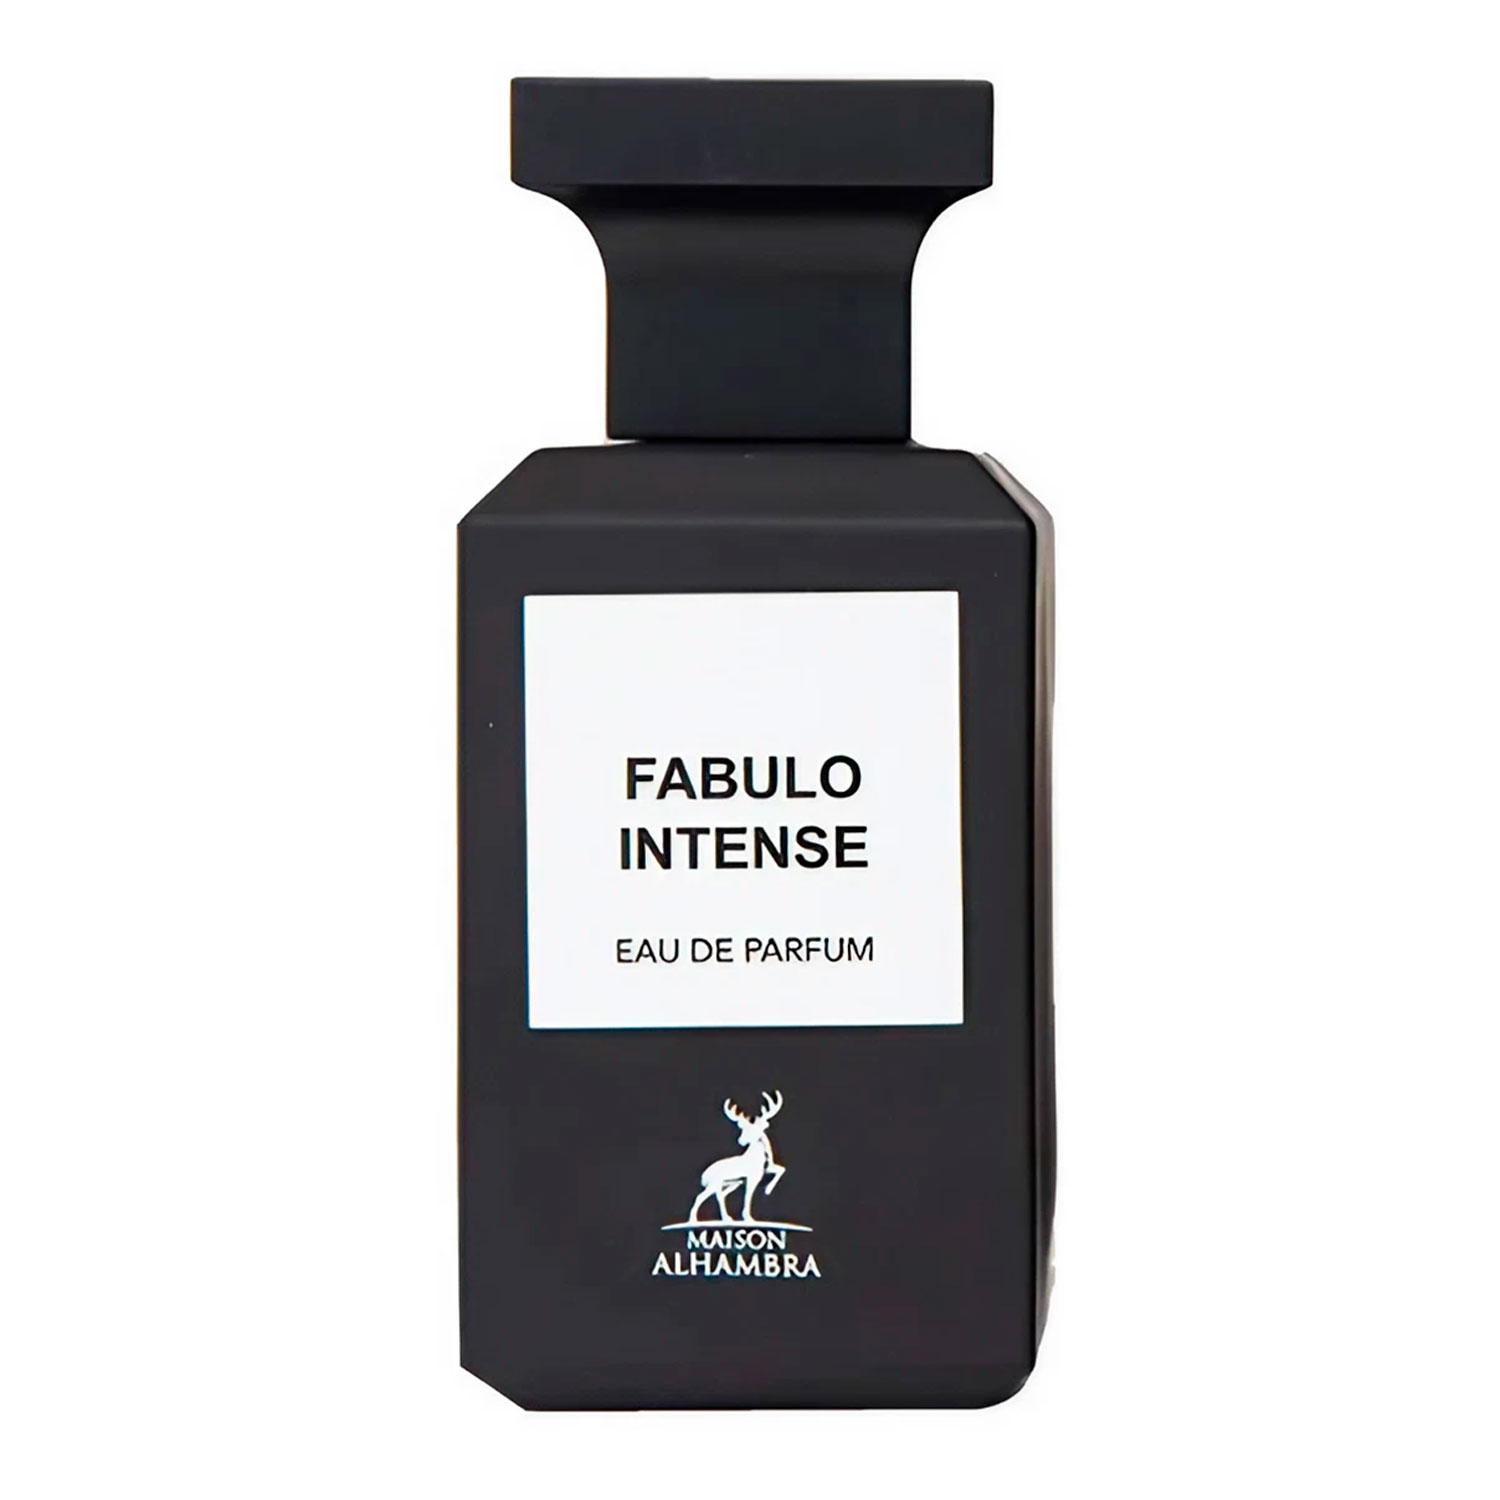 Perfume Maison Alhambra Fabulo Intense Eau de Parfum Unissex 80ml